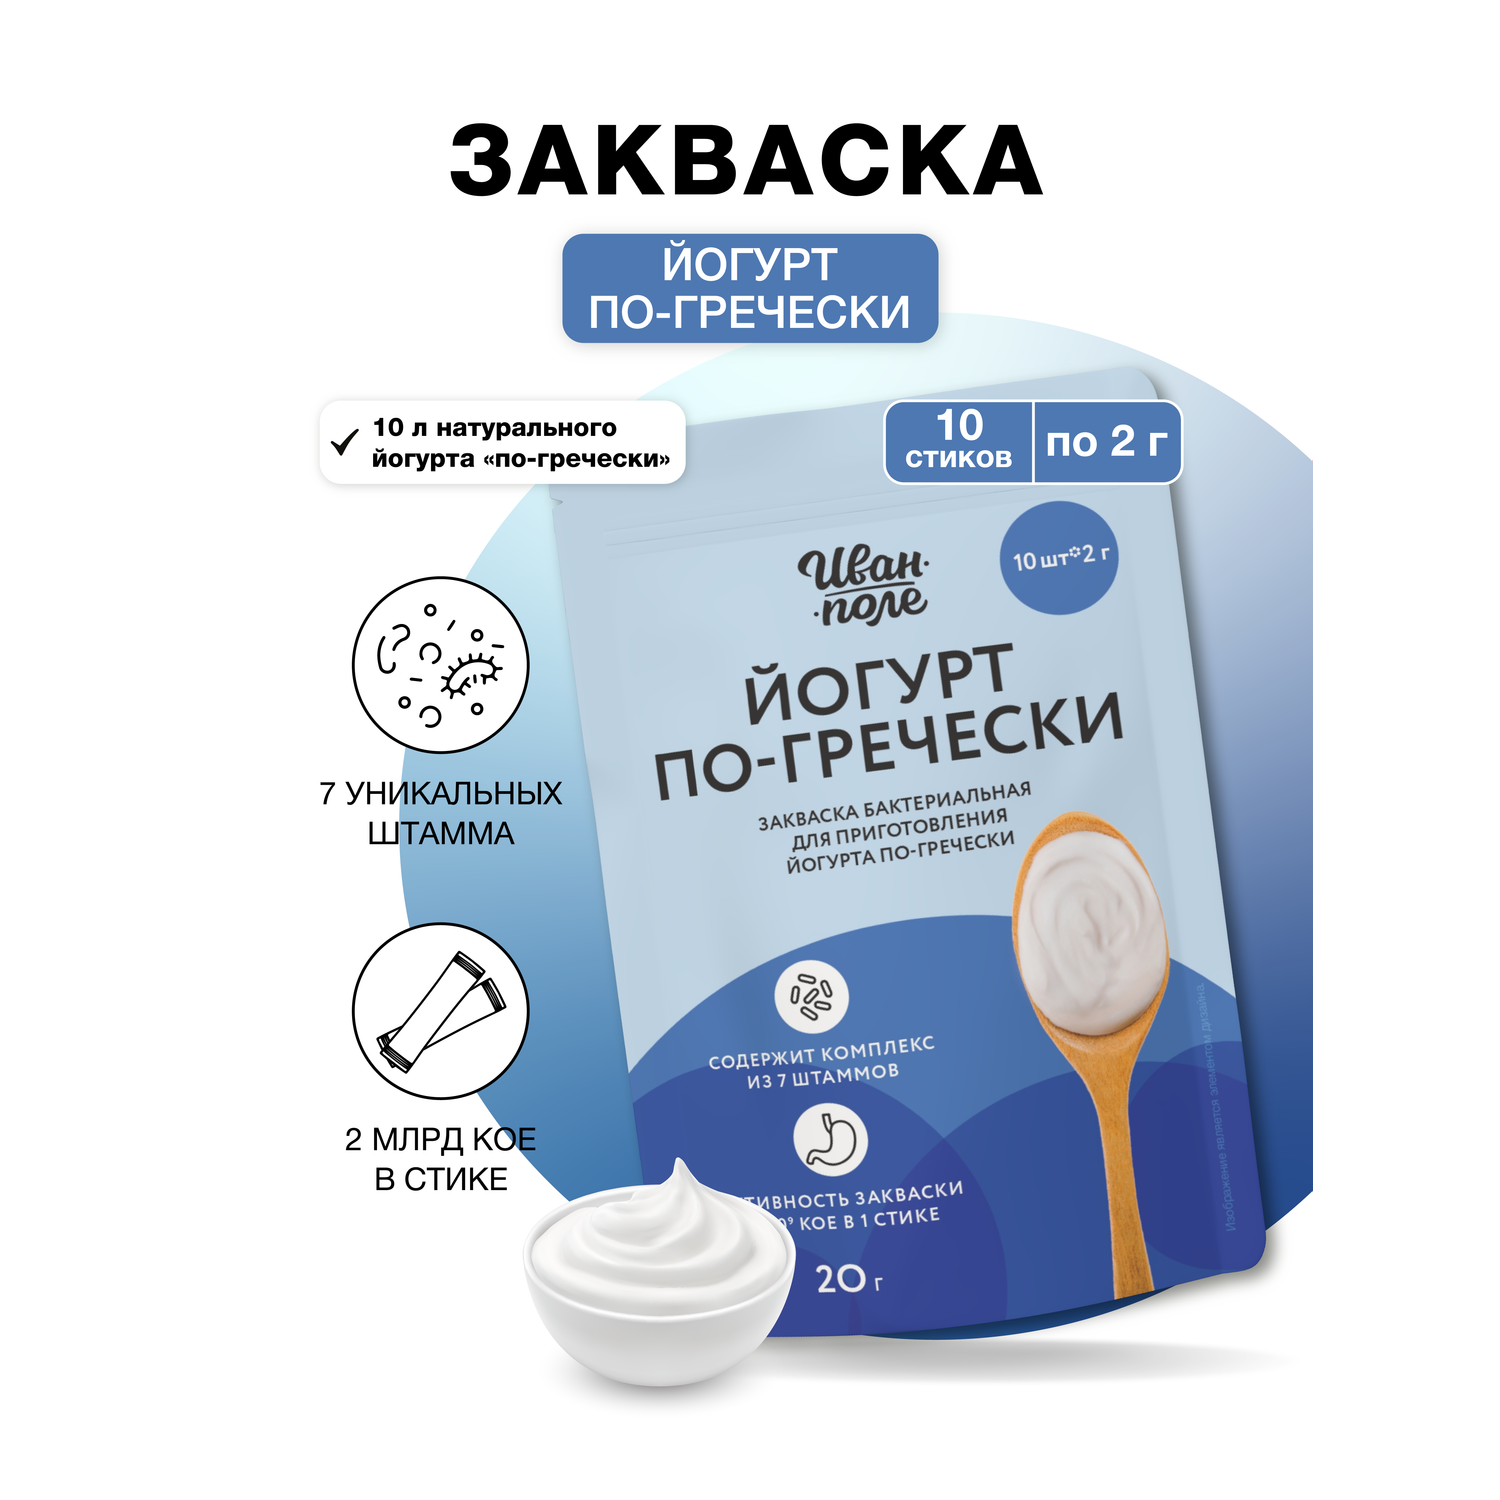 Закваска бактериальная Иван-поле йогурта по-гречески 10 порций по 2 г - фото 1